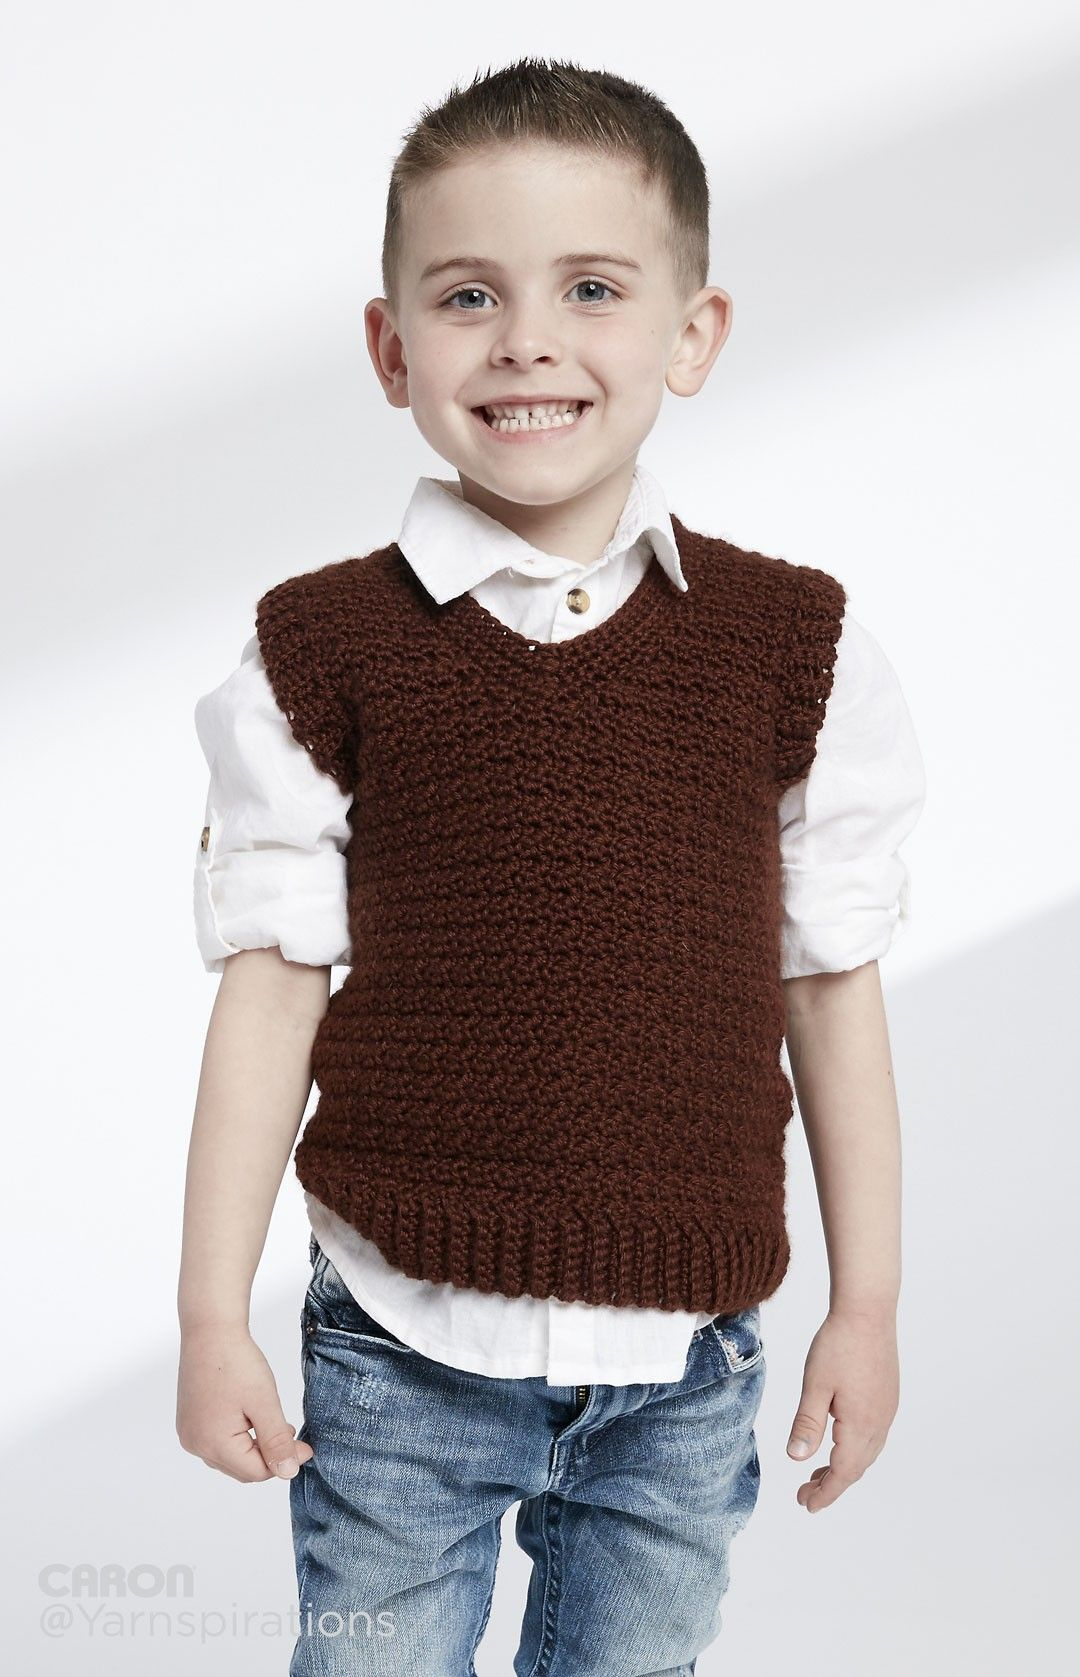 Crochet Sweater Vest Pattern Free Childs Crochet V Neck Vest Patterns Yarnspirations Crochet